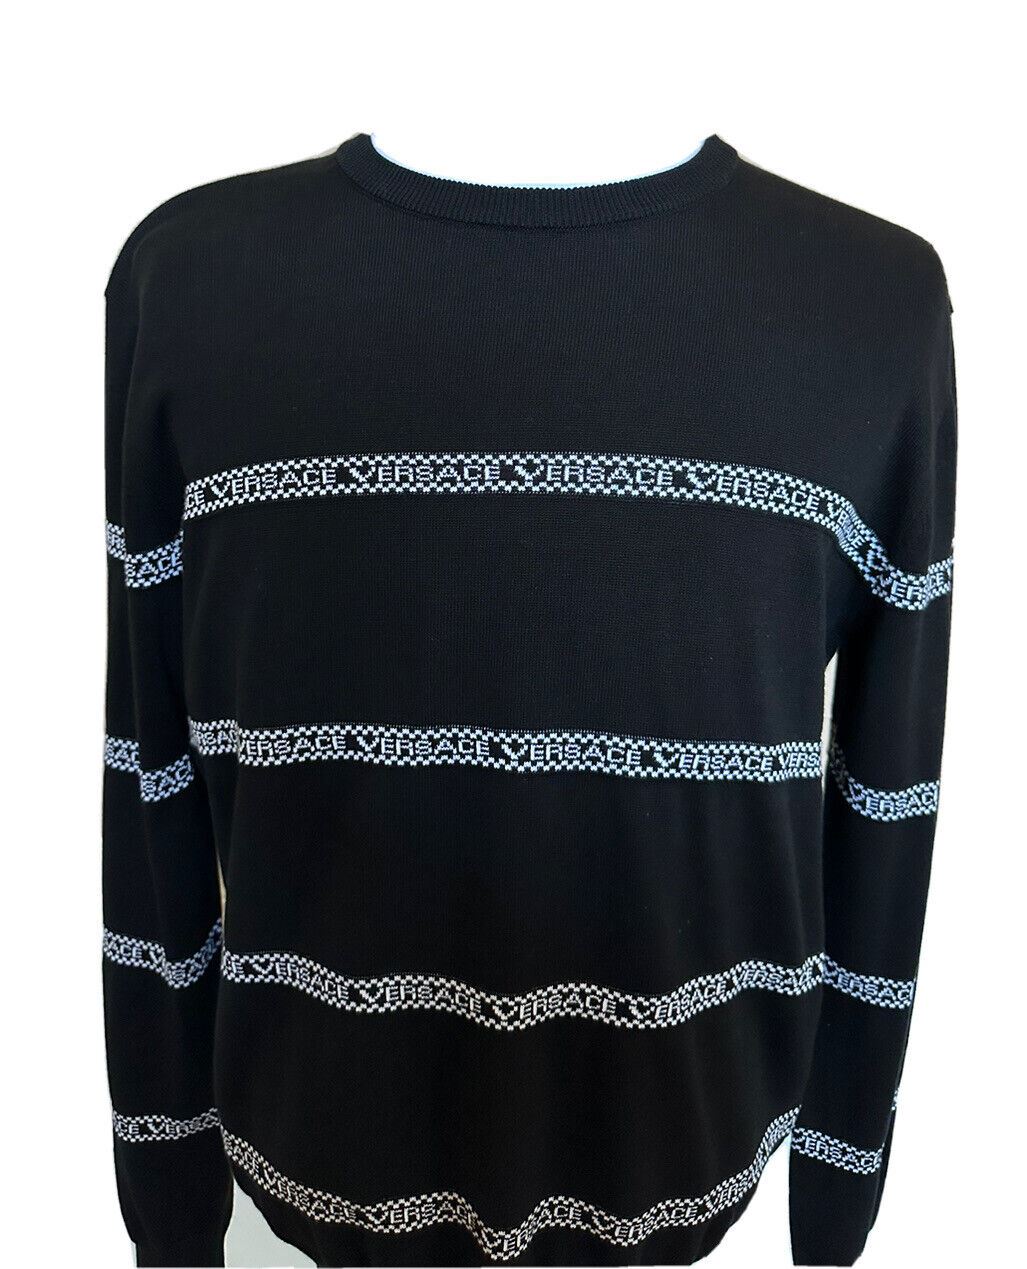 Neu mit Etikett: 850 $ Versace Logo Baumwollstrickpullover Schwarz 50 (Groß) Italien A89468S